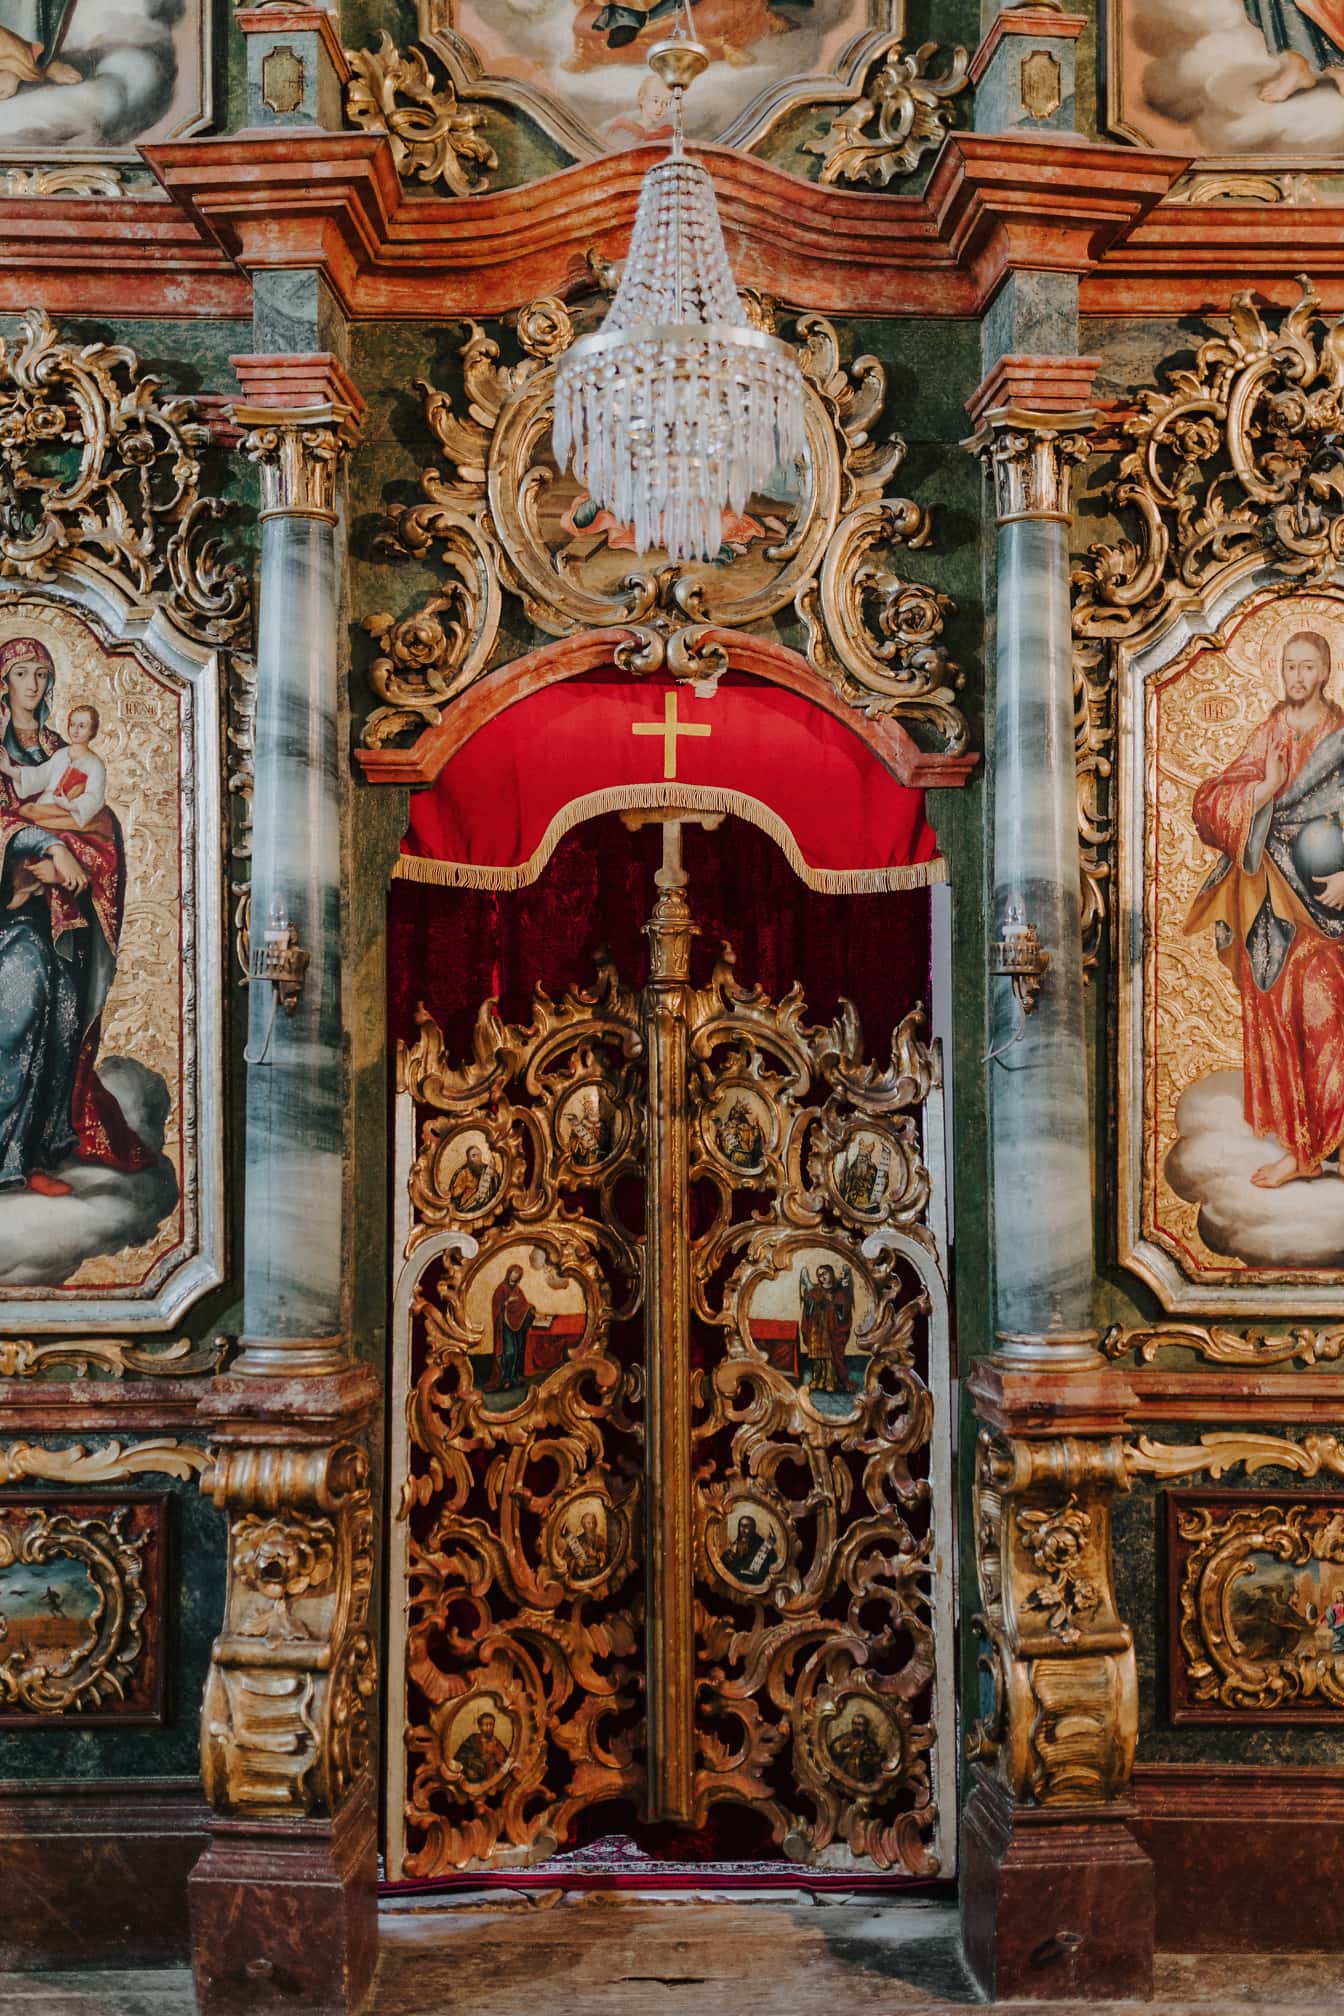 ประตูทางเข้าบนแท่นบูชาในโบสถ์รัสเซียออร์โธดอกซ์พร้อมโคมระย้าคริสตัลด้านบน